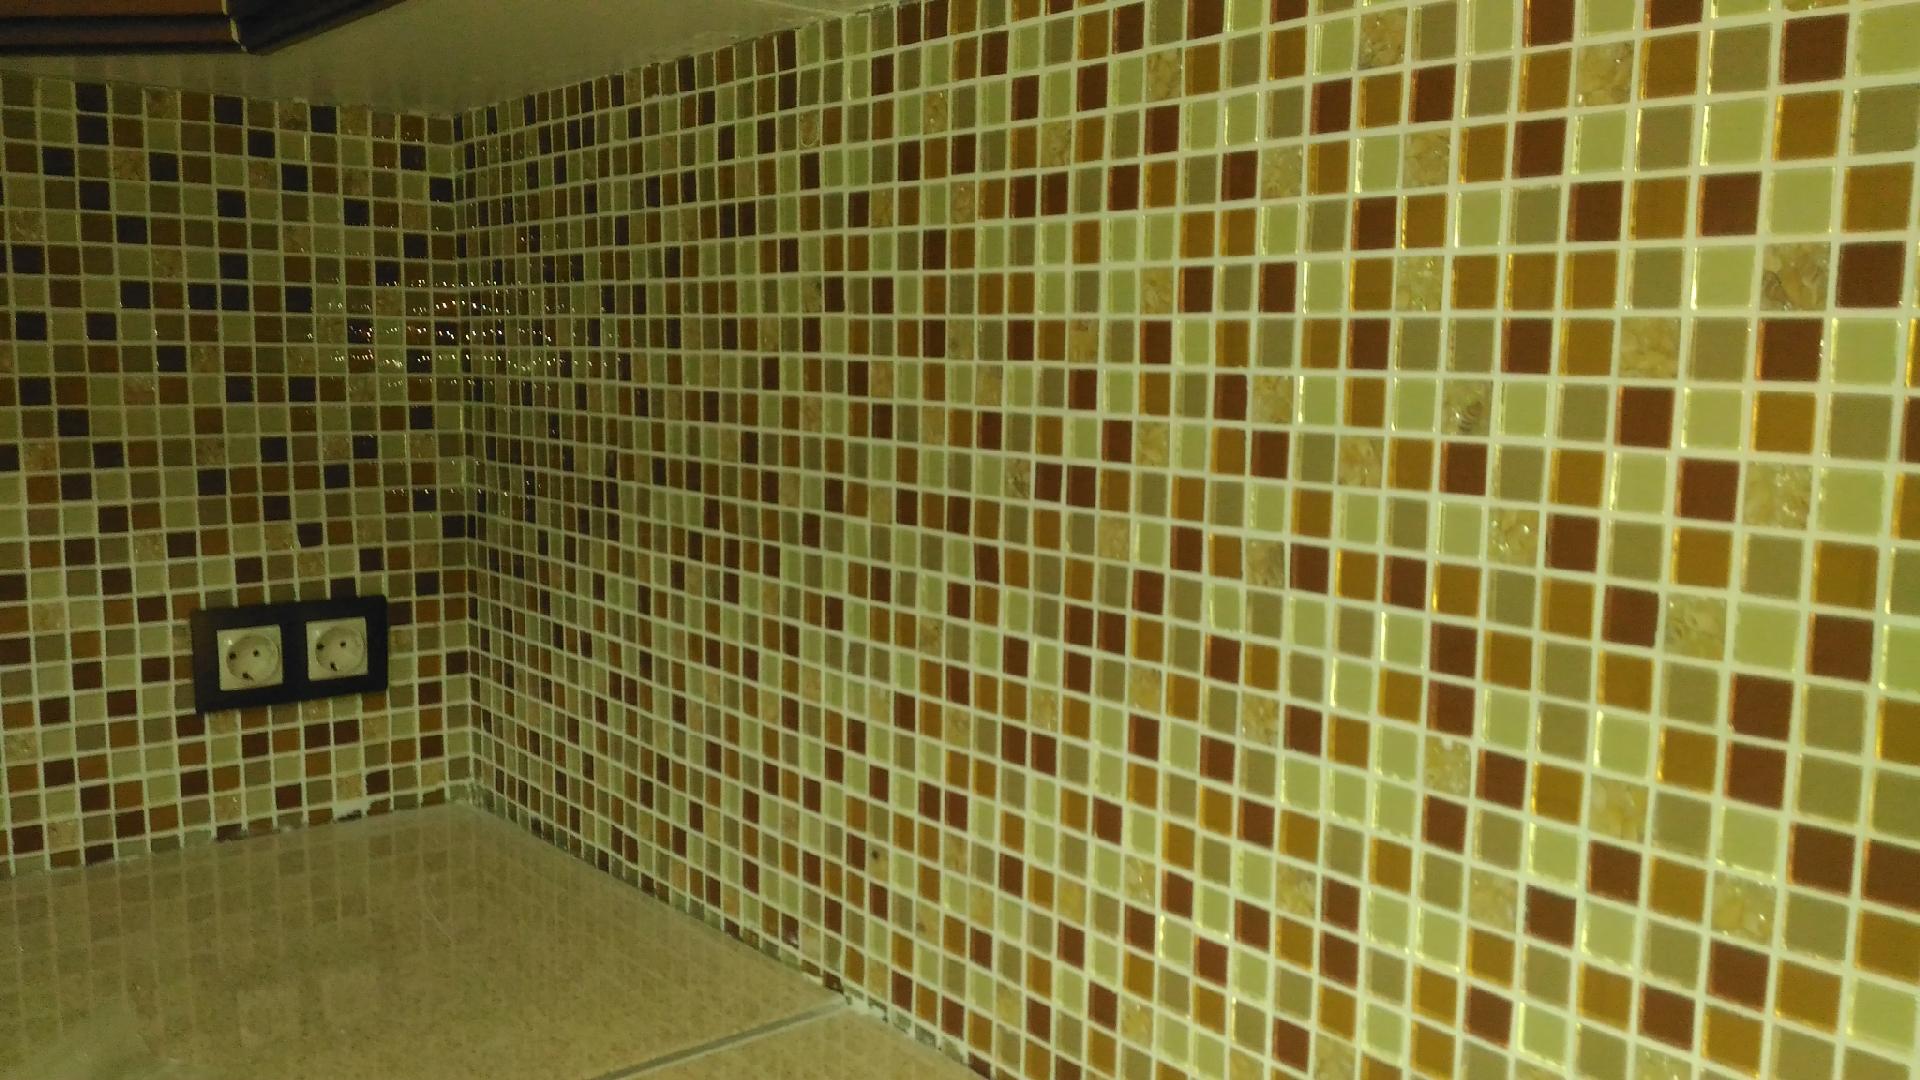 Плитка-мозаика для ванной комнаты: разновидности, подготовка основания, монтаж